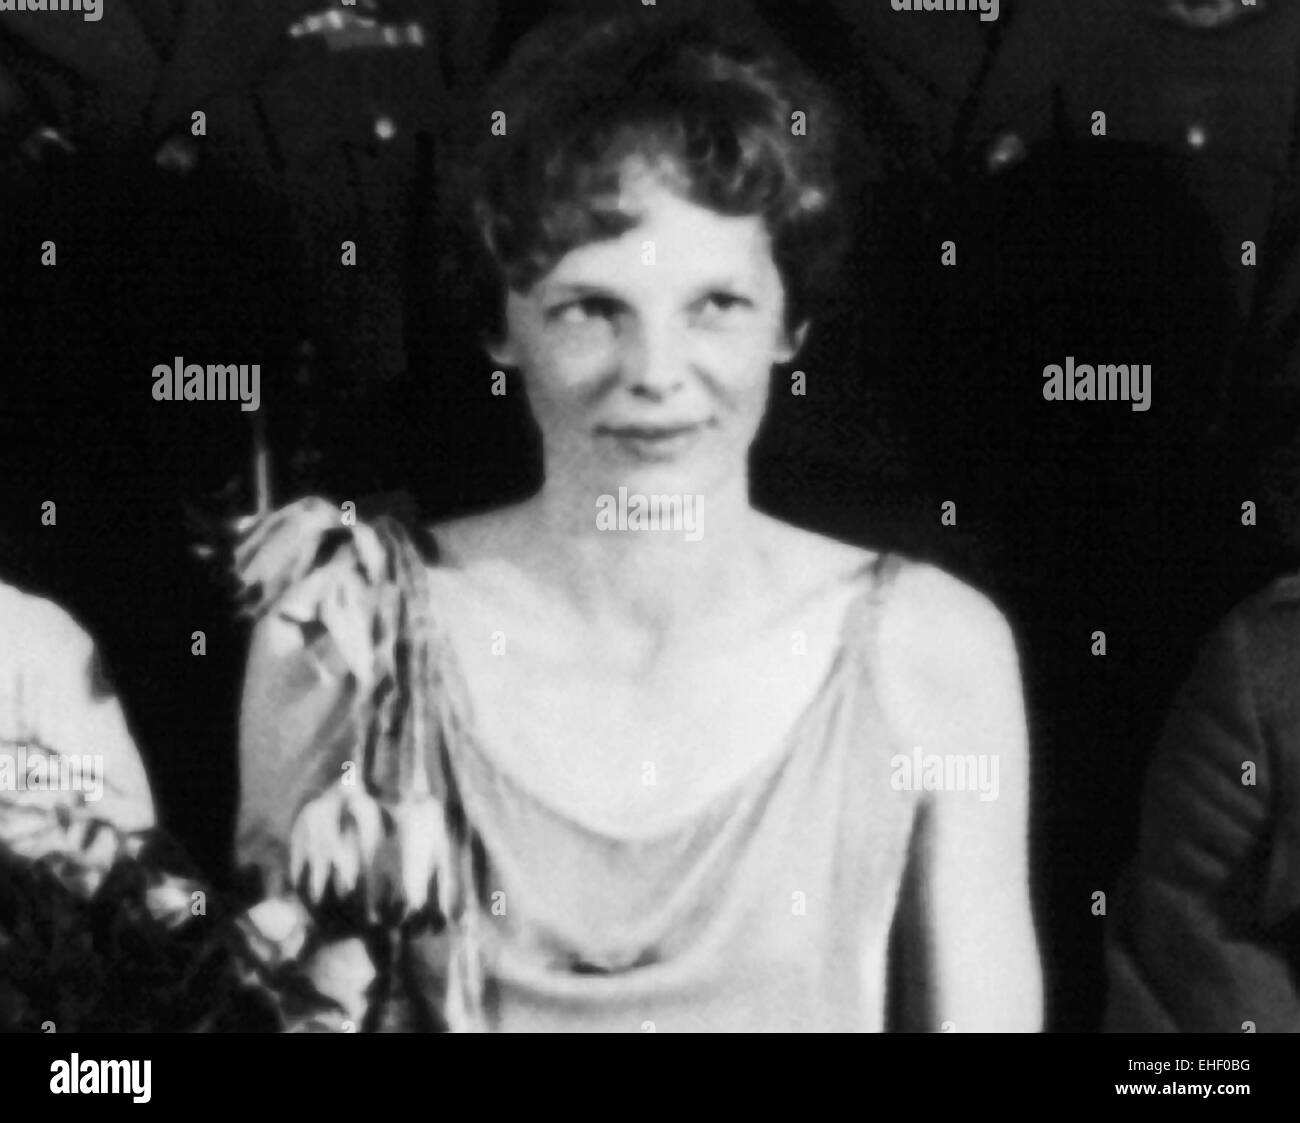 Vintage-Foto der amerikanischen Luftfahrtpionierin und Autorin Amelia Earhart (1897 – 1939 für tot erklärt) – Earhart und ihr Navigator Fred Noonan verschwanden 1937 bekanntermaßen, als sie versuchte, das erste Weibchen zu werden, das einen Rundflug über den Globus absolvierte. Foto ca. 1930. Stockfoto